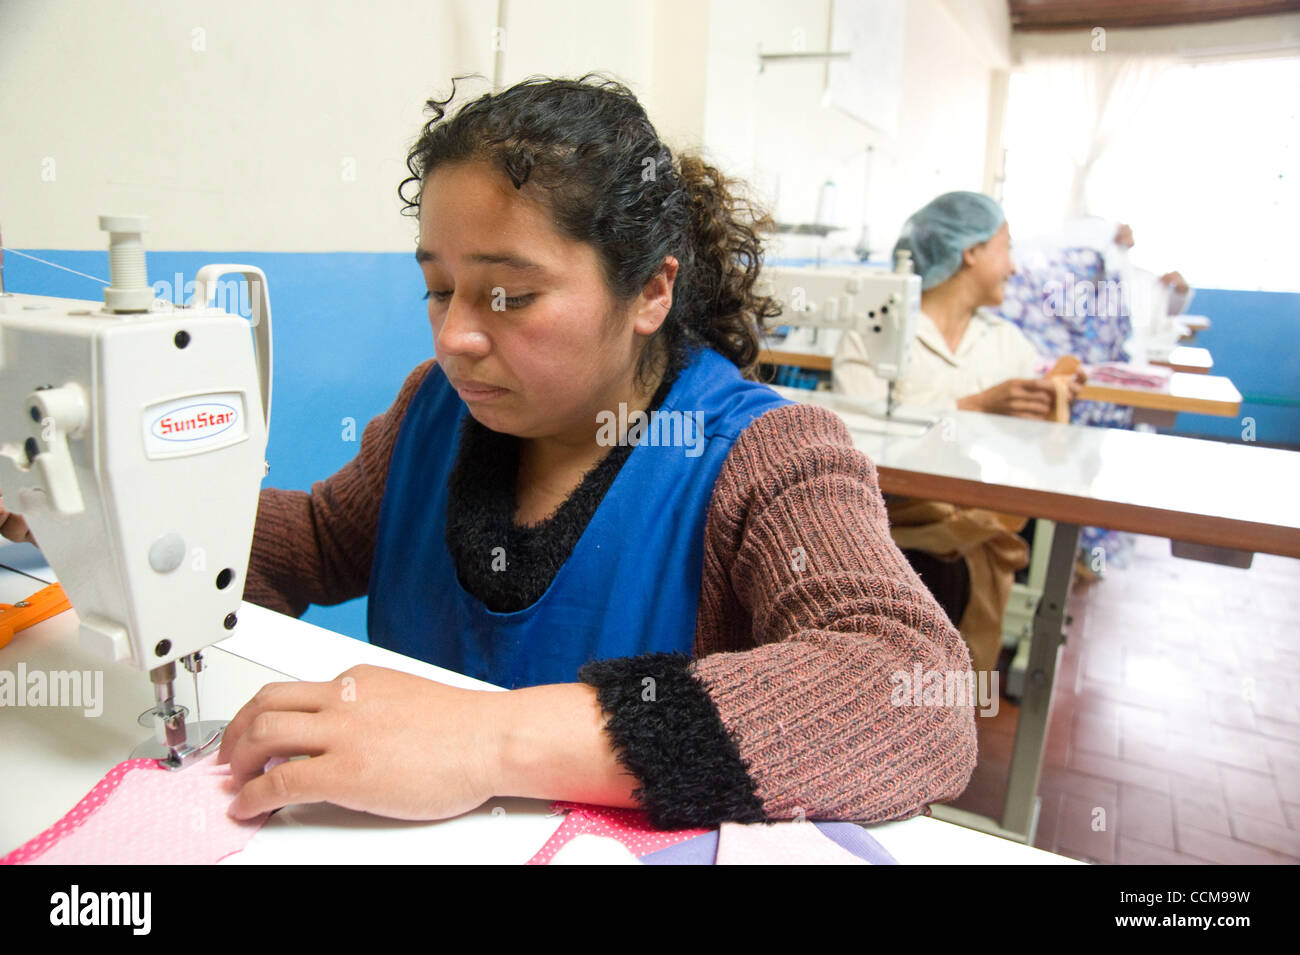 9 novembre 2010 - Bogota, Colombie - Bogota, Colombie, le 9 novembre 2010 - Les femmes à acquérir des compétences de couture par le biais d'un centre de formation d'acquérir des compétences dans la communauté de Camilo Torres dans le sud de Bogota. Avec le soutien d'un organisme d'aide internationale, le centre contribue à la formation des femmes dans les bases de couture, et avec un suivi Banque D'Images